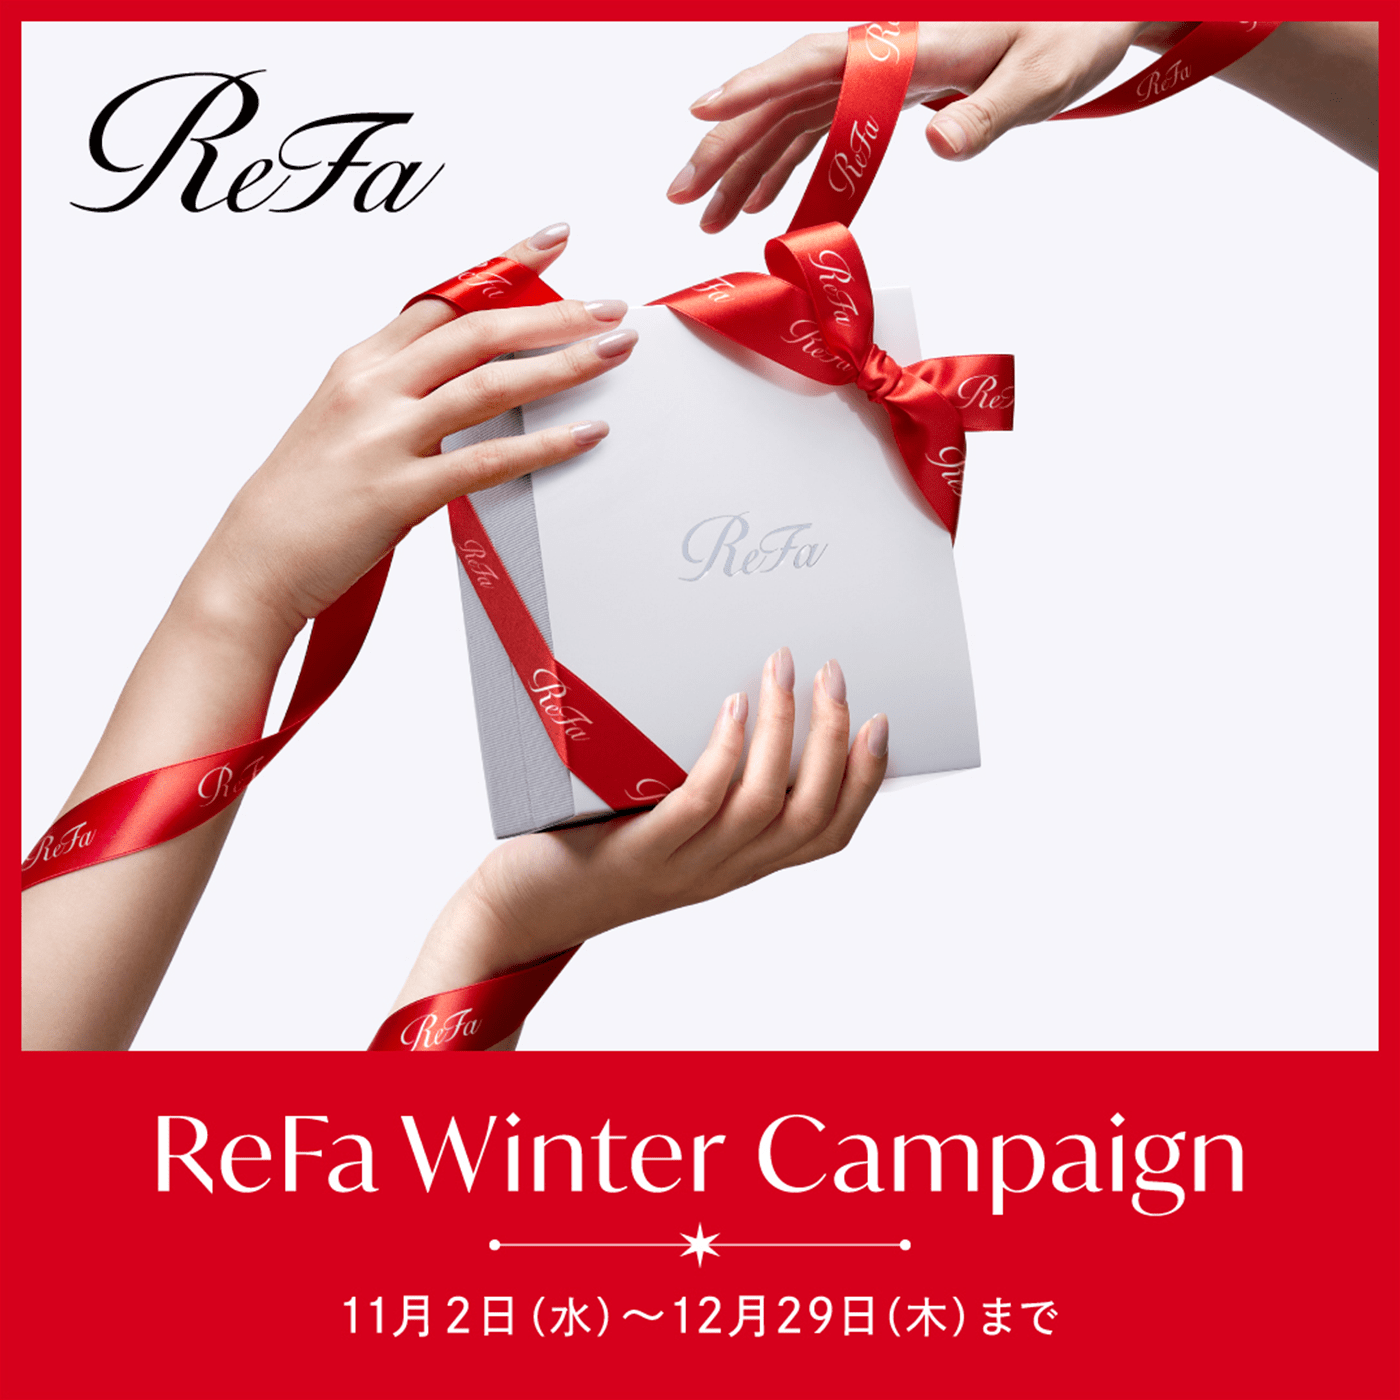 ギフトに人気の美容ブランド「ReFa」が、”BEAUTY SPIRAL, HAPPY SPIRAL”をテーマに2022 ReFa Winter Campaignを実施